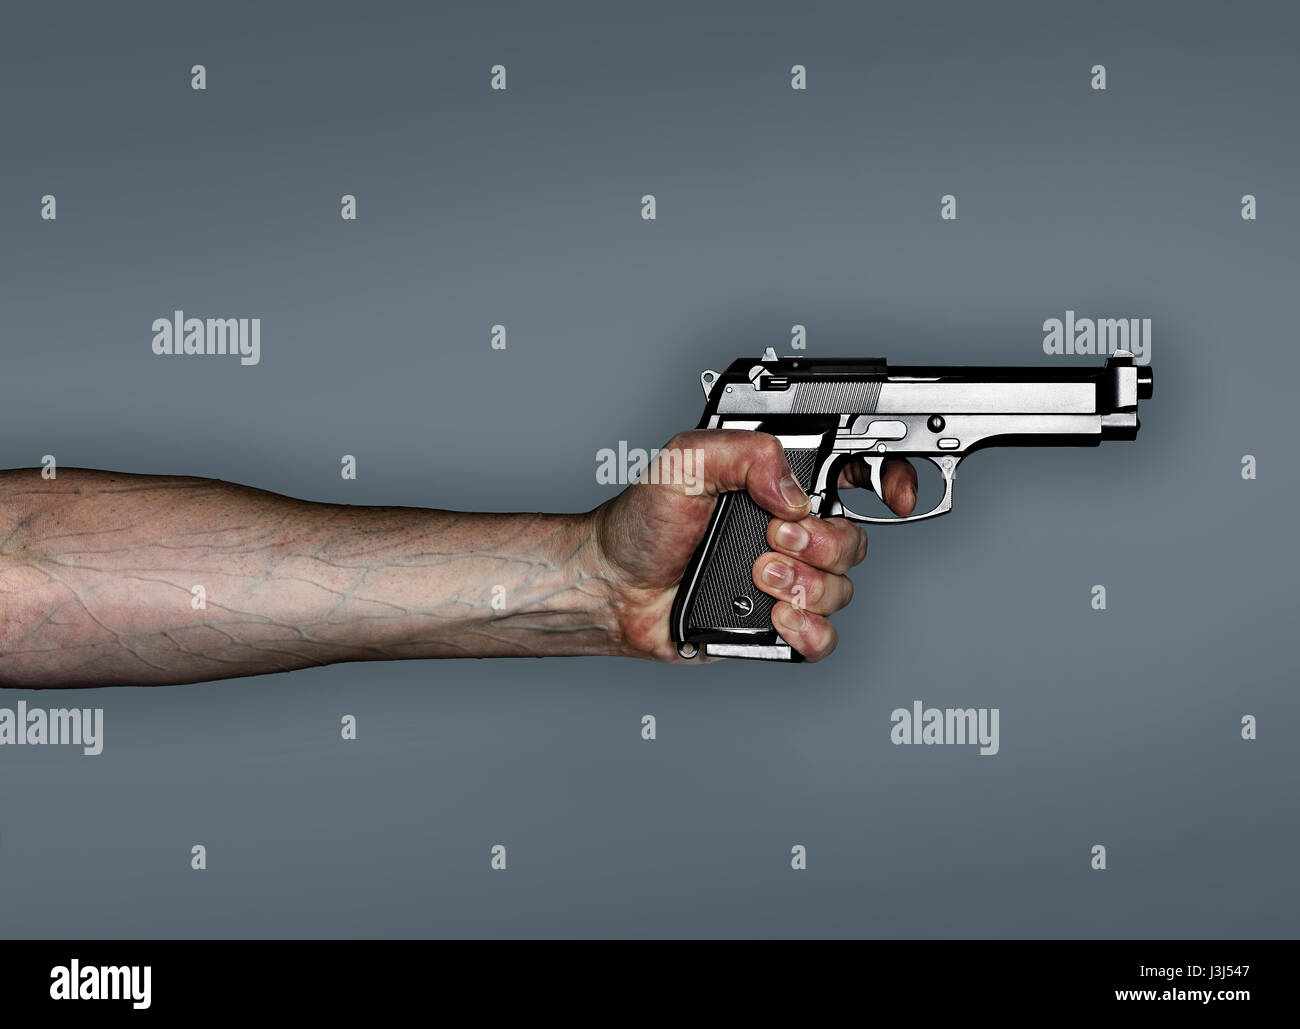 Pistolet à main, qui saisit fermement le pistolet avec des nervures renversées dans le bras. Banque D'Images